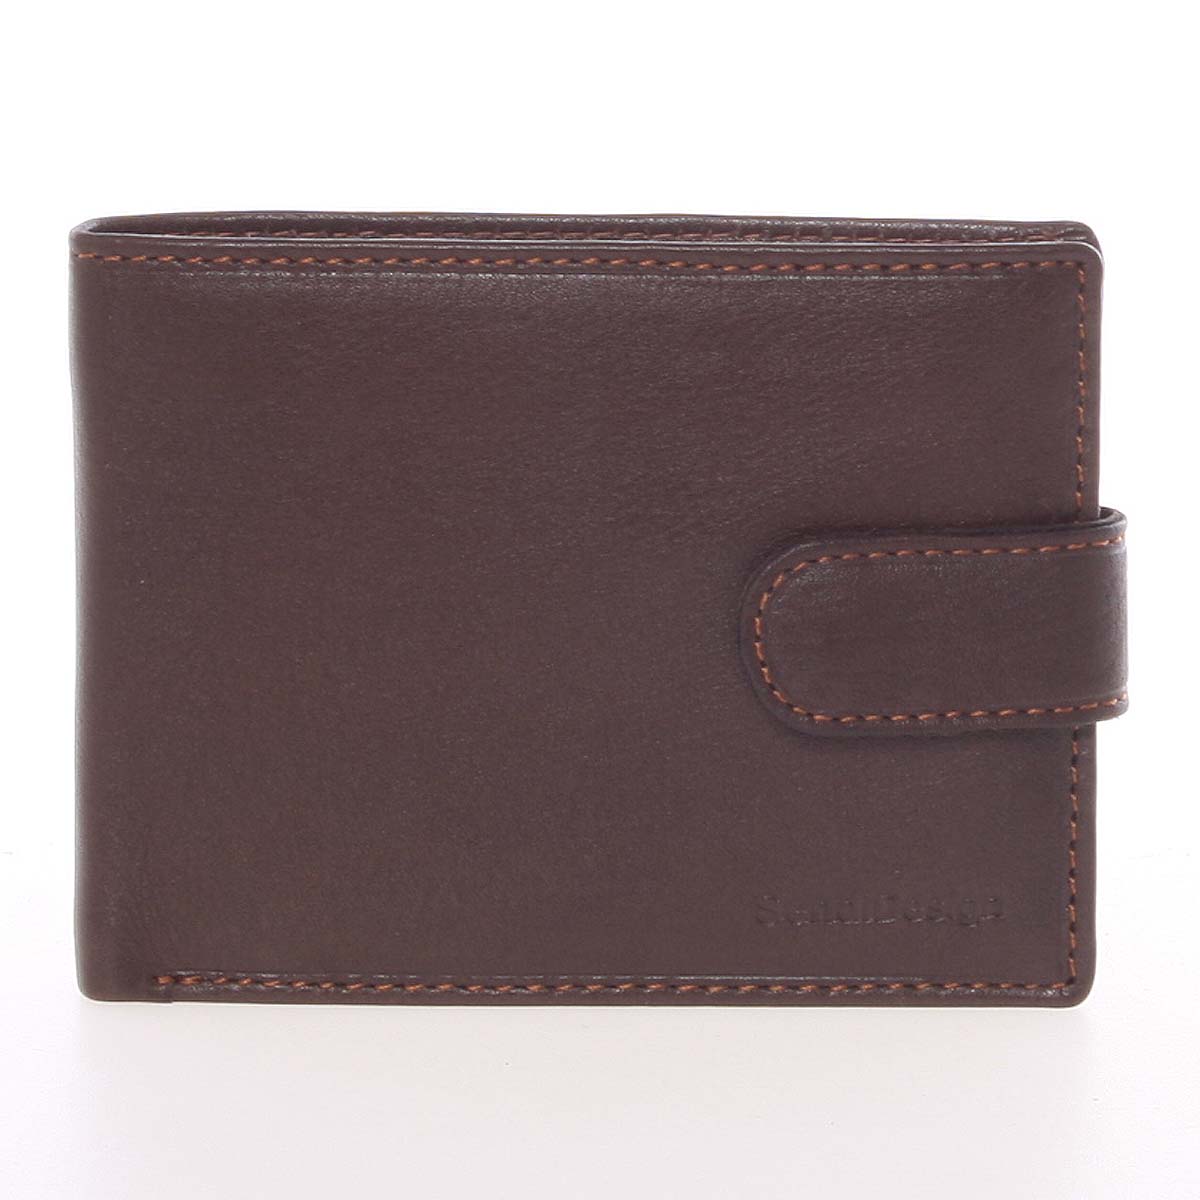 Pánska hnedá kožená peňaženka sa zápinky - SendiDesign Prejem